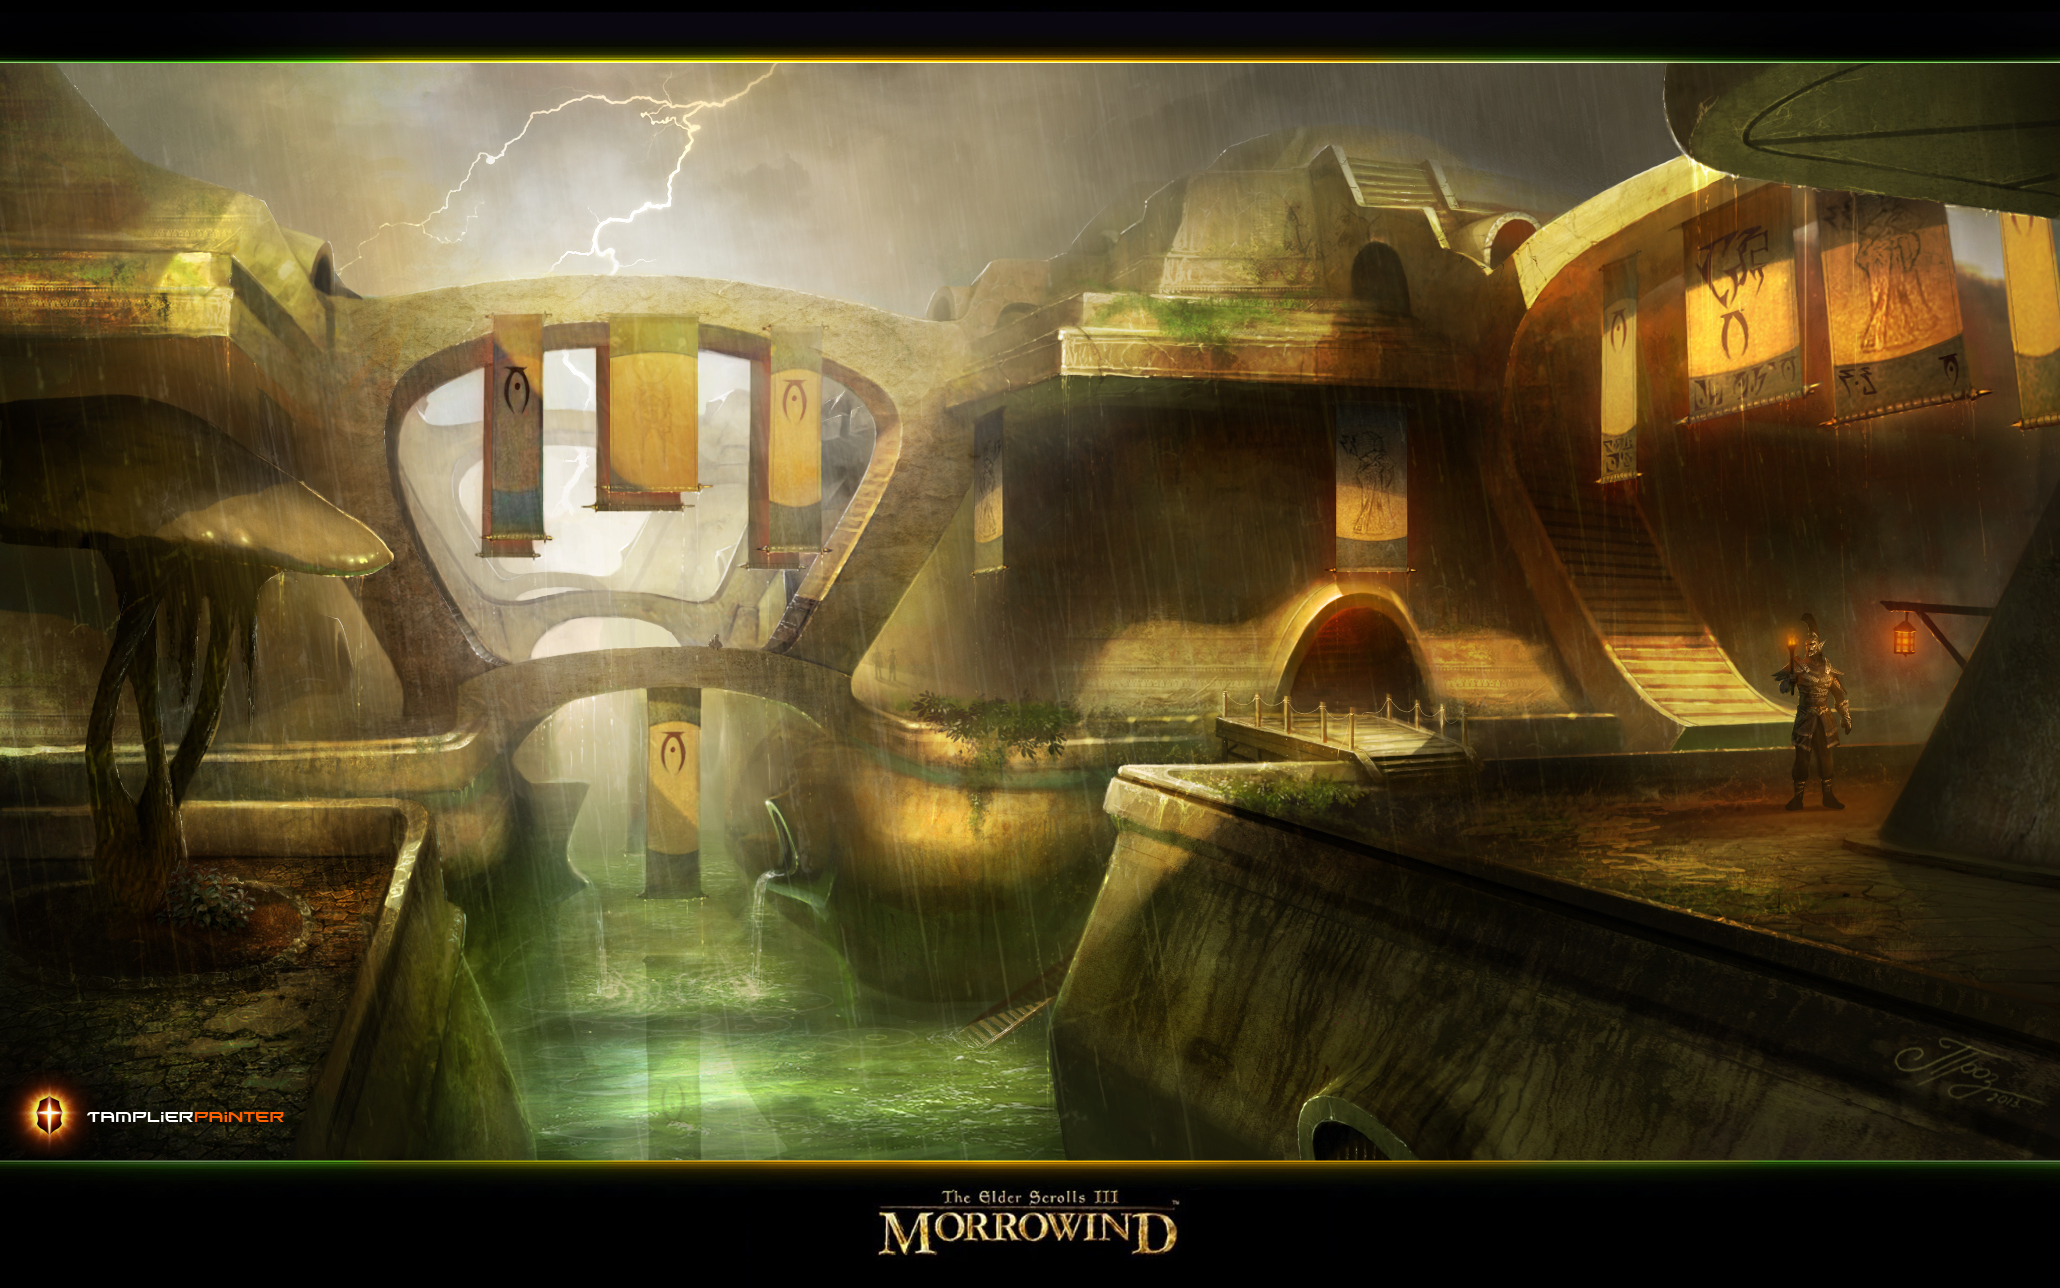 The Elder Scrolls Iii Morrowind 2060x1288